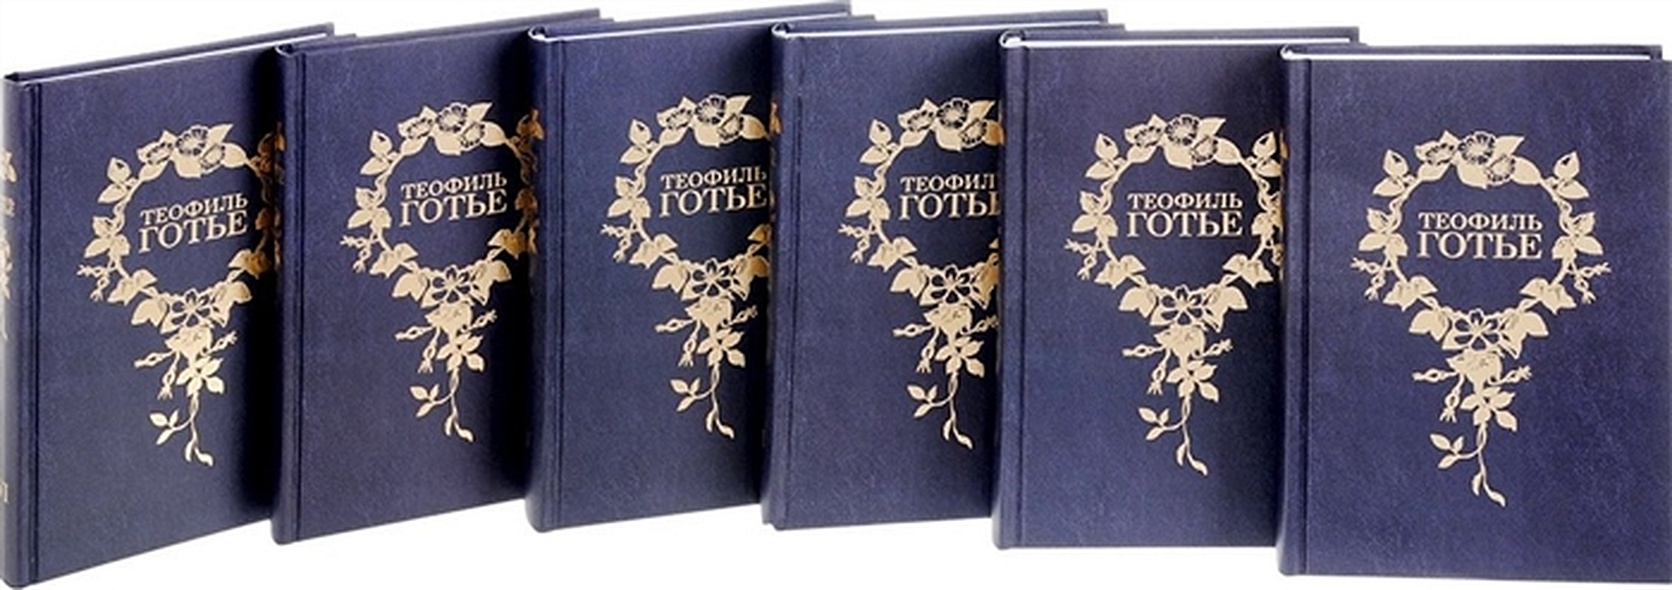 Теофиль Готье (Собрание сочинений в шести томах) (комплект из 6 книг) - фото 1